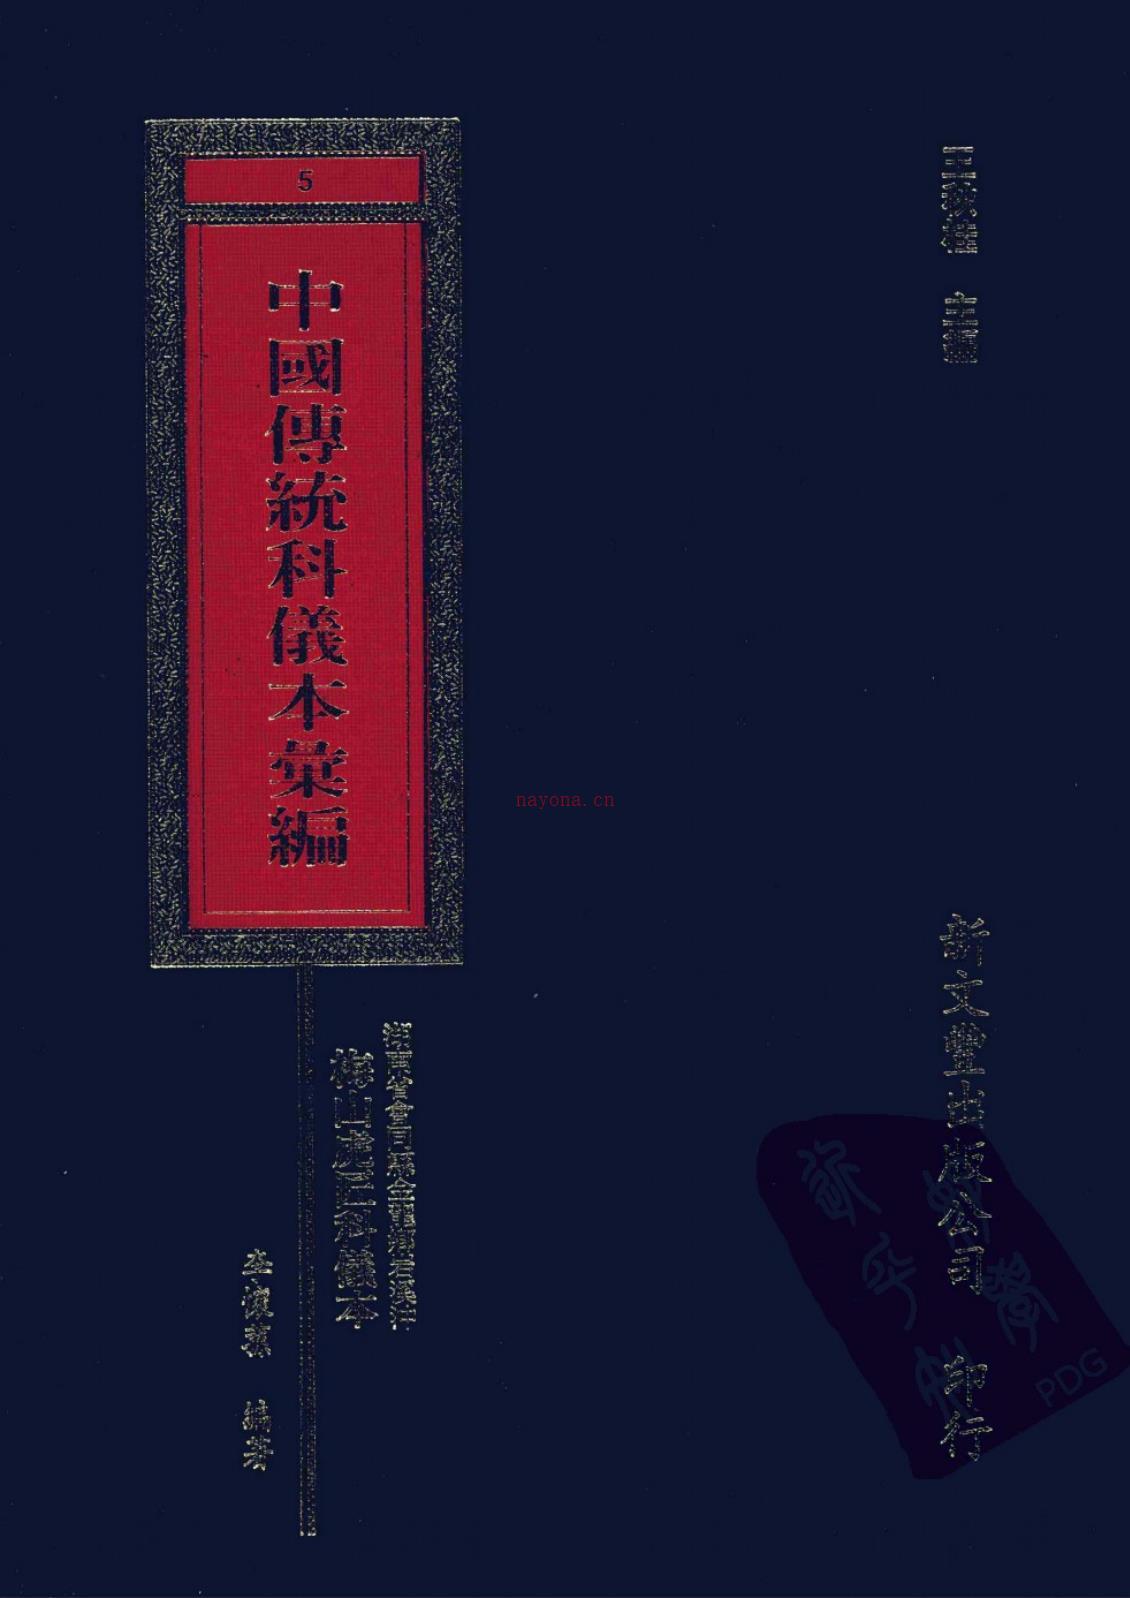 中国传统科仪本汇编478页电子版 (中国传统科仪本汇编一共多少本)